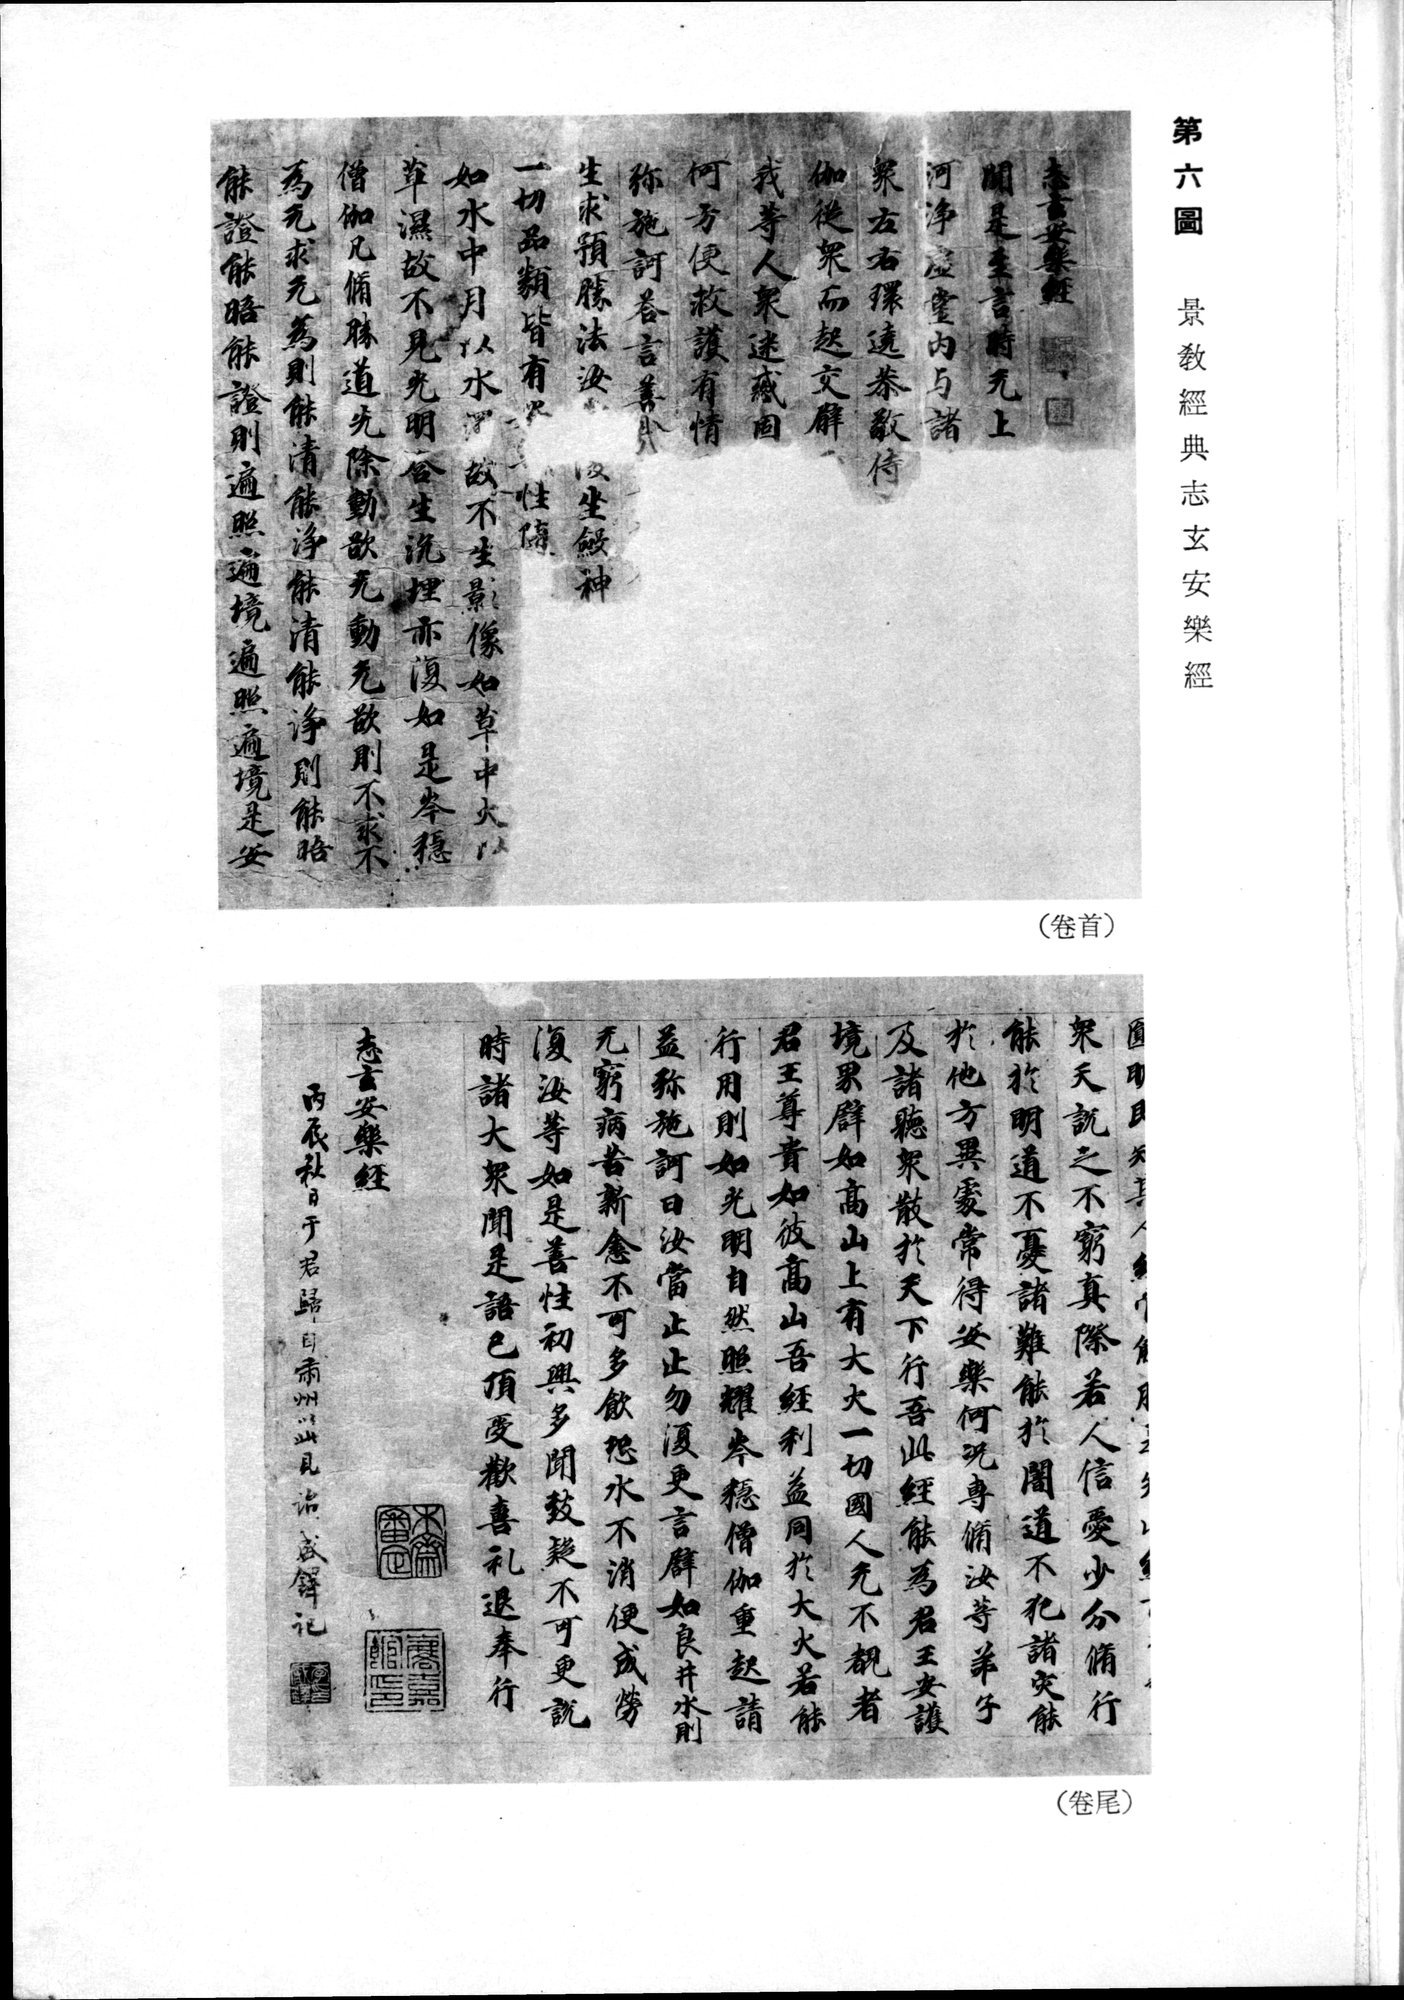 羽田博士史学論文集 : vol.2 / 17 ページ（白黒高解像度画像）